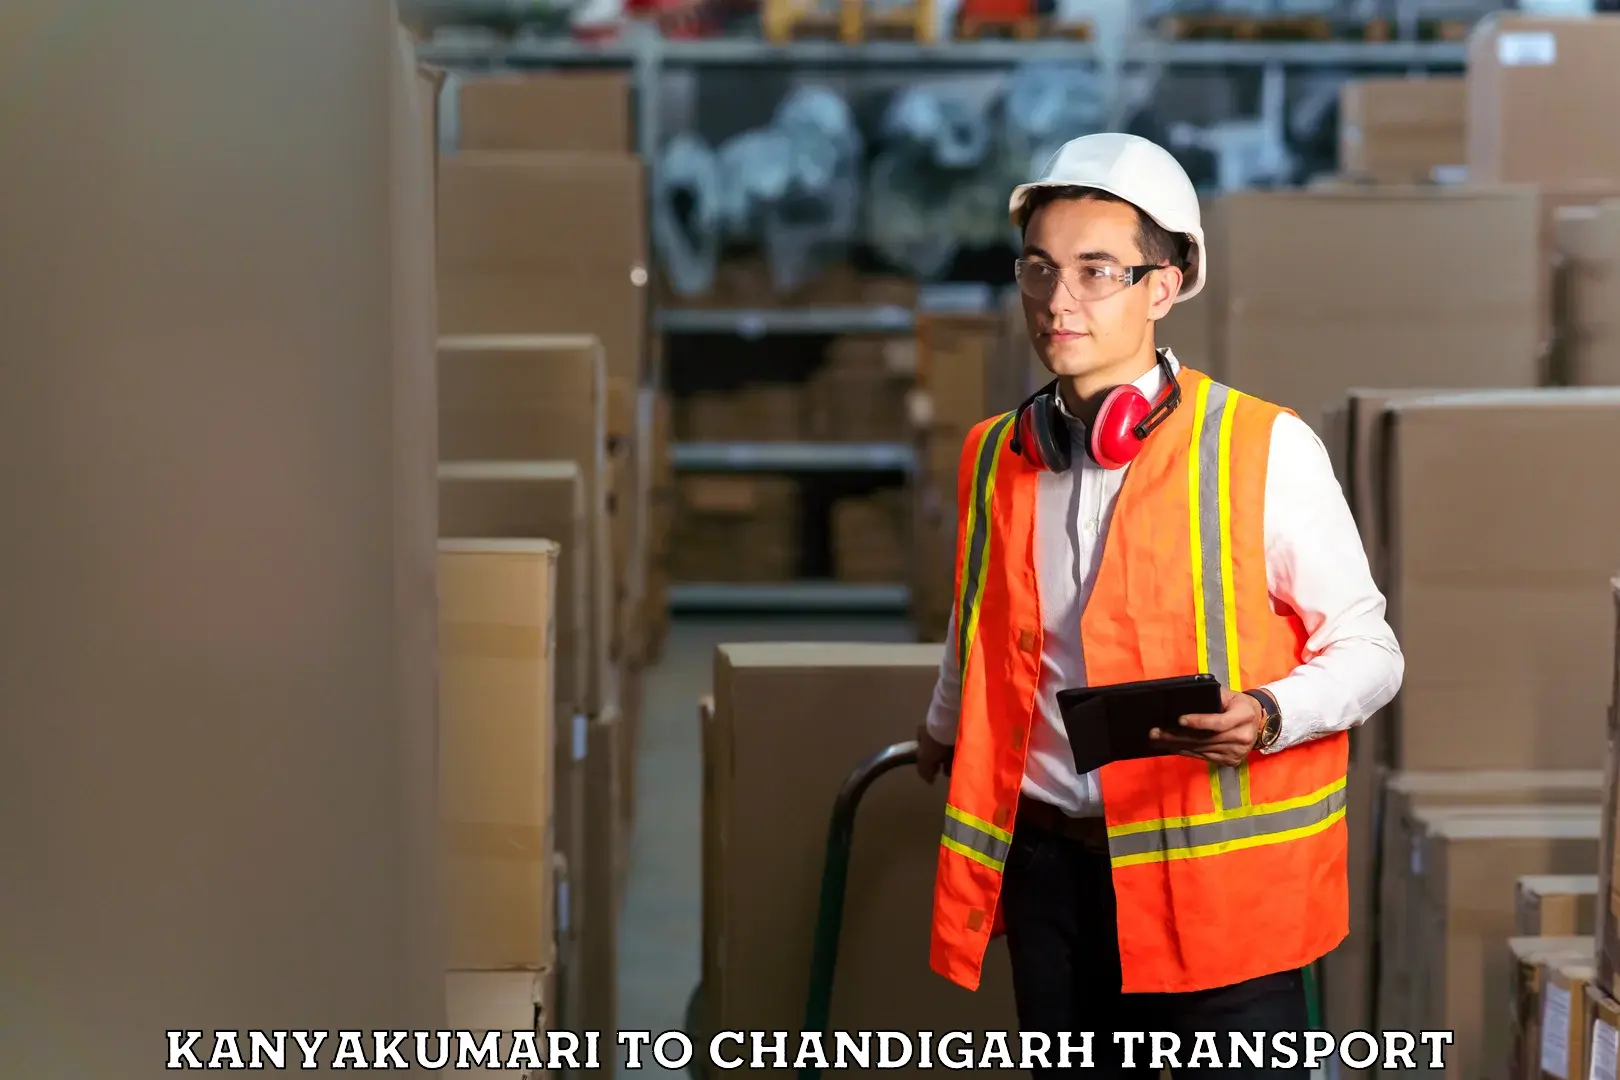 Transport shared services Kanyakumari to Chandigarh